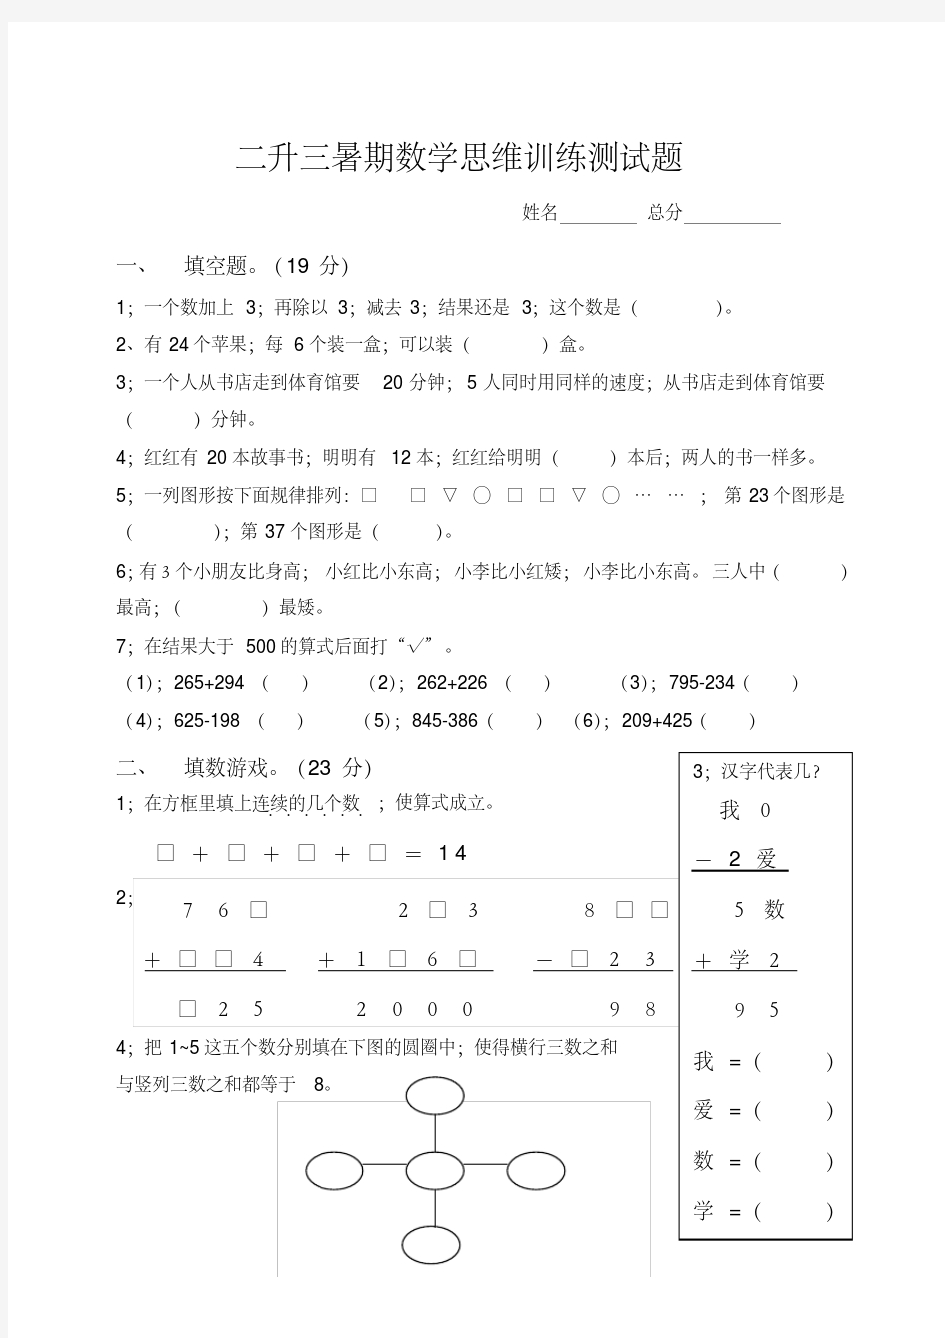 【小学数学】小学二升三暑期数学思维训练测试题